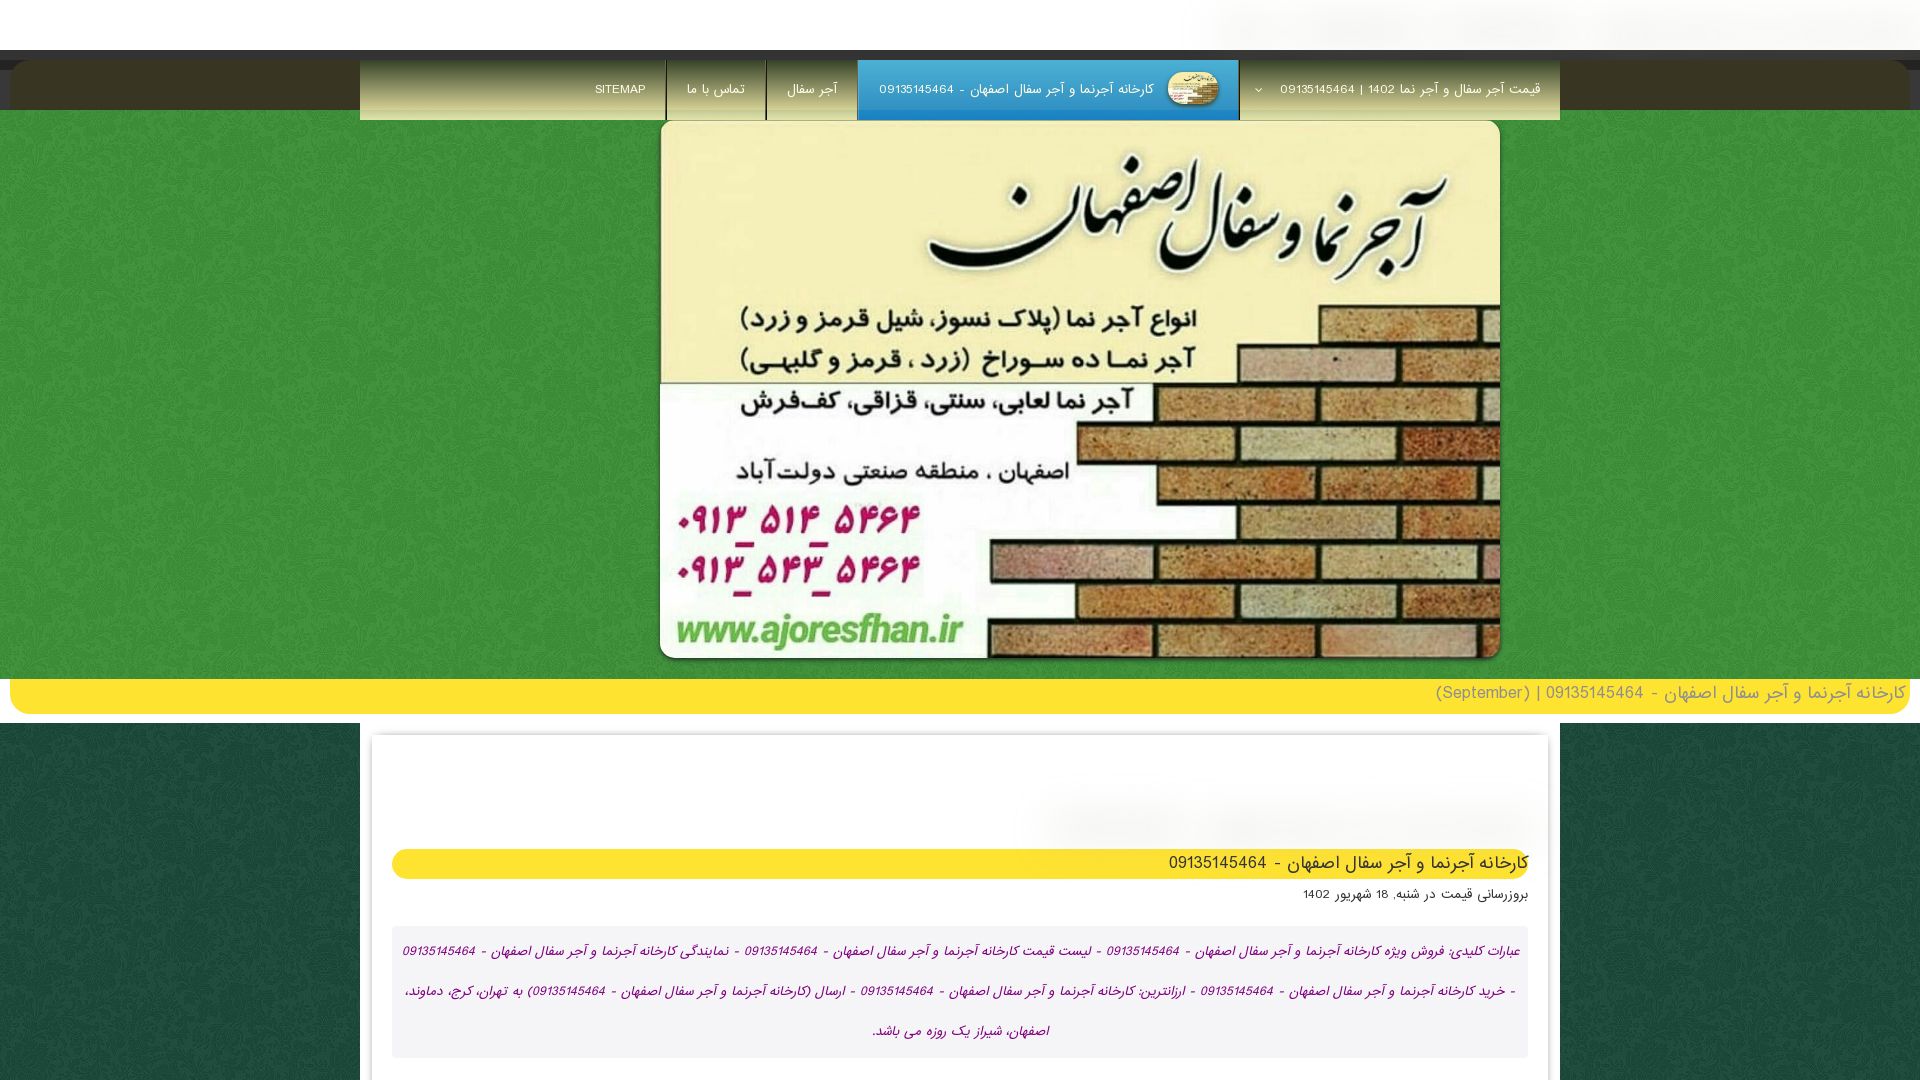 État du site web ajornamaesfahan.ir est   EN LIGNE